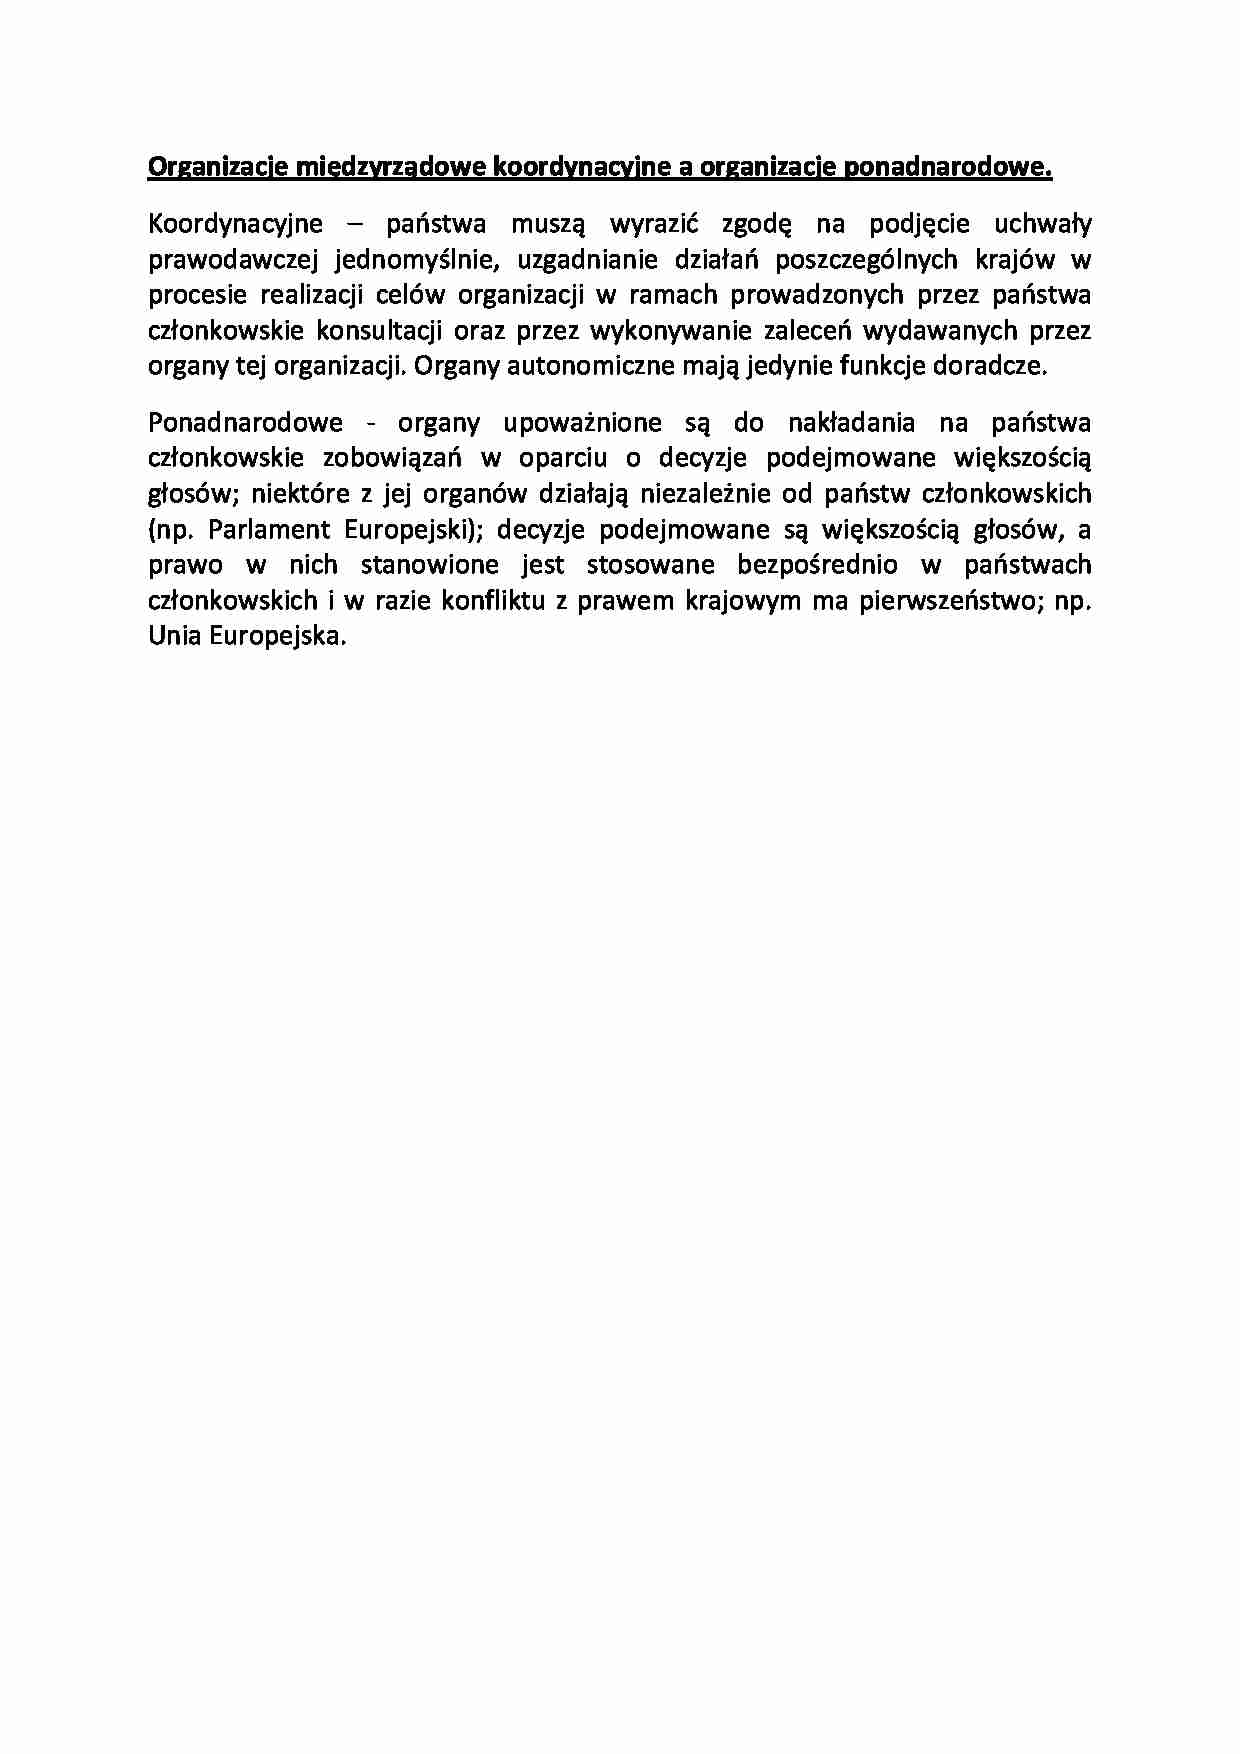 Organizacje międzyrządowe koordynacyjne a organizacje ponadnarodowe-opracowanie - strona 1